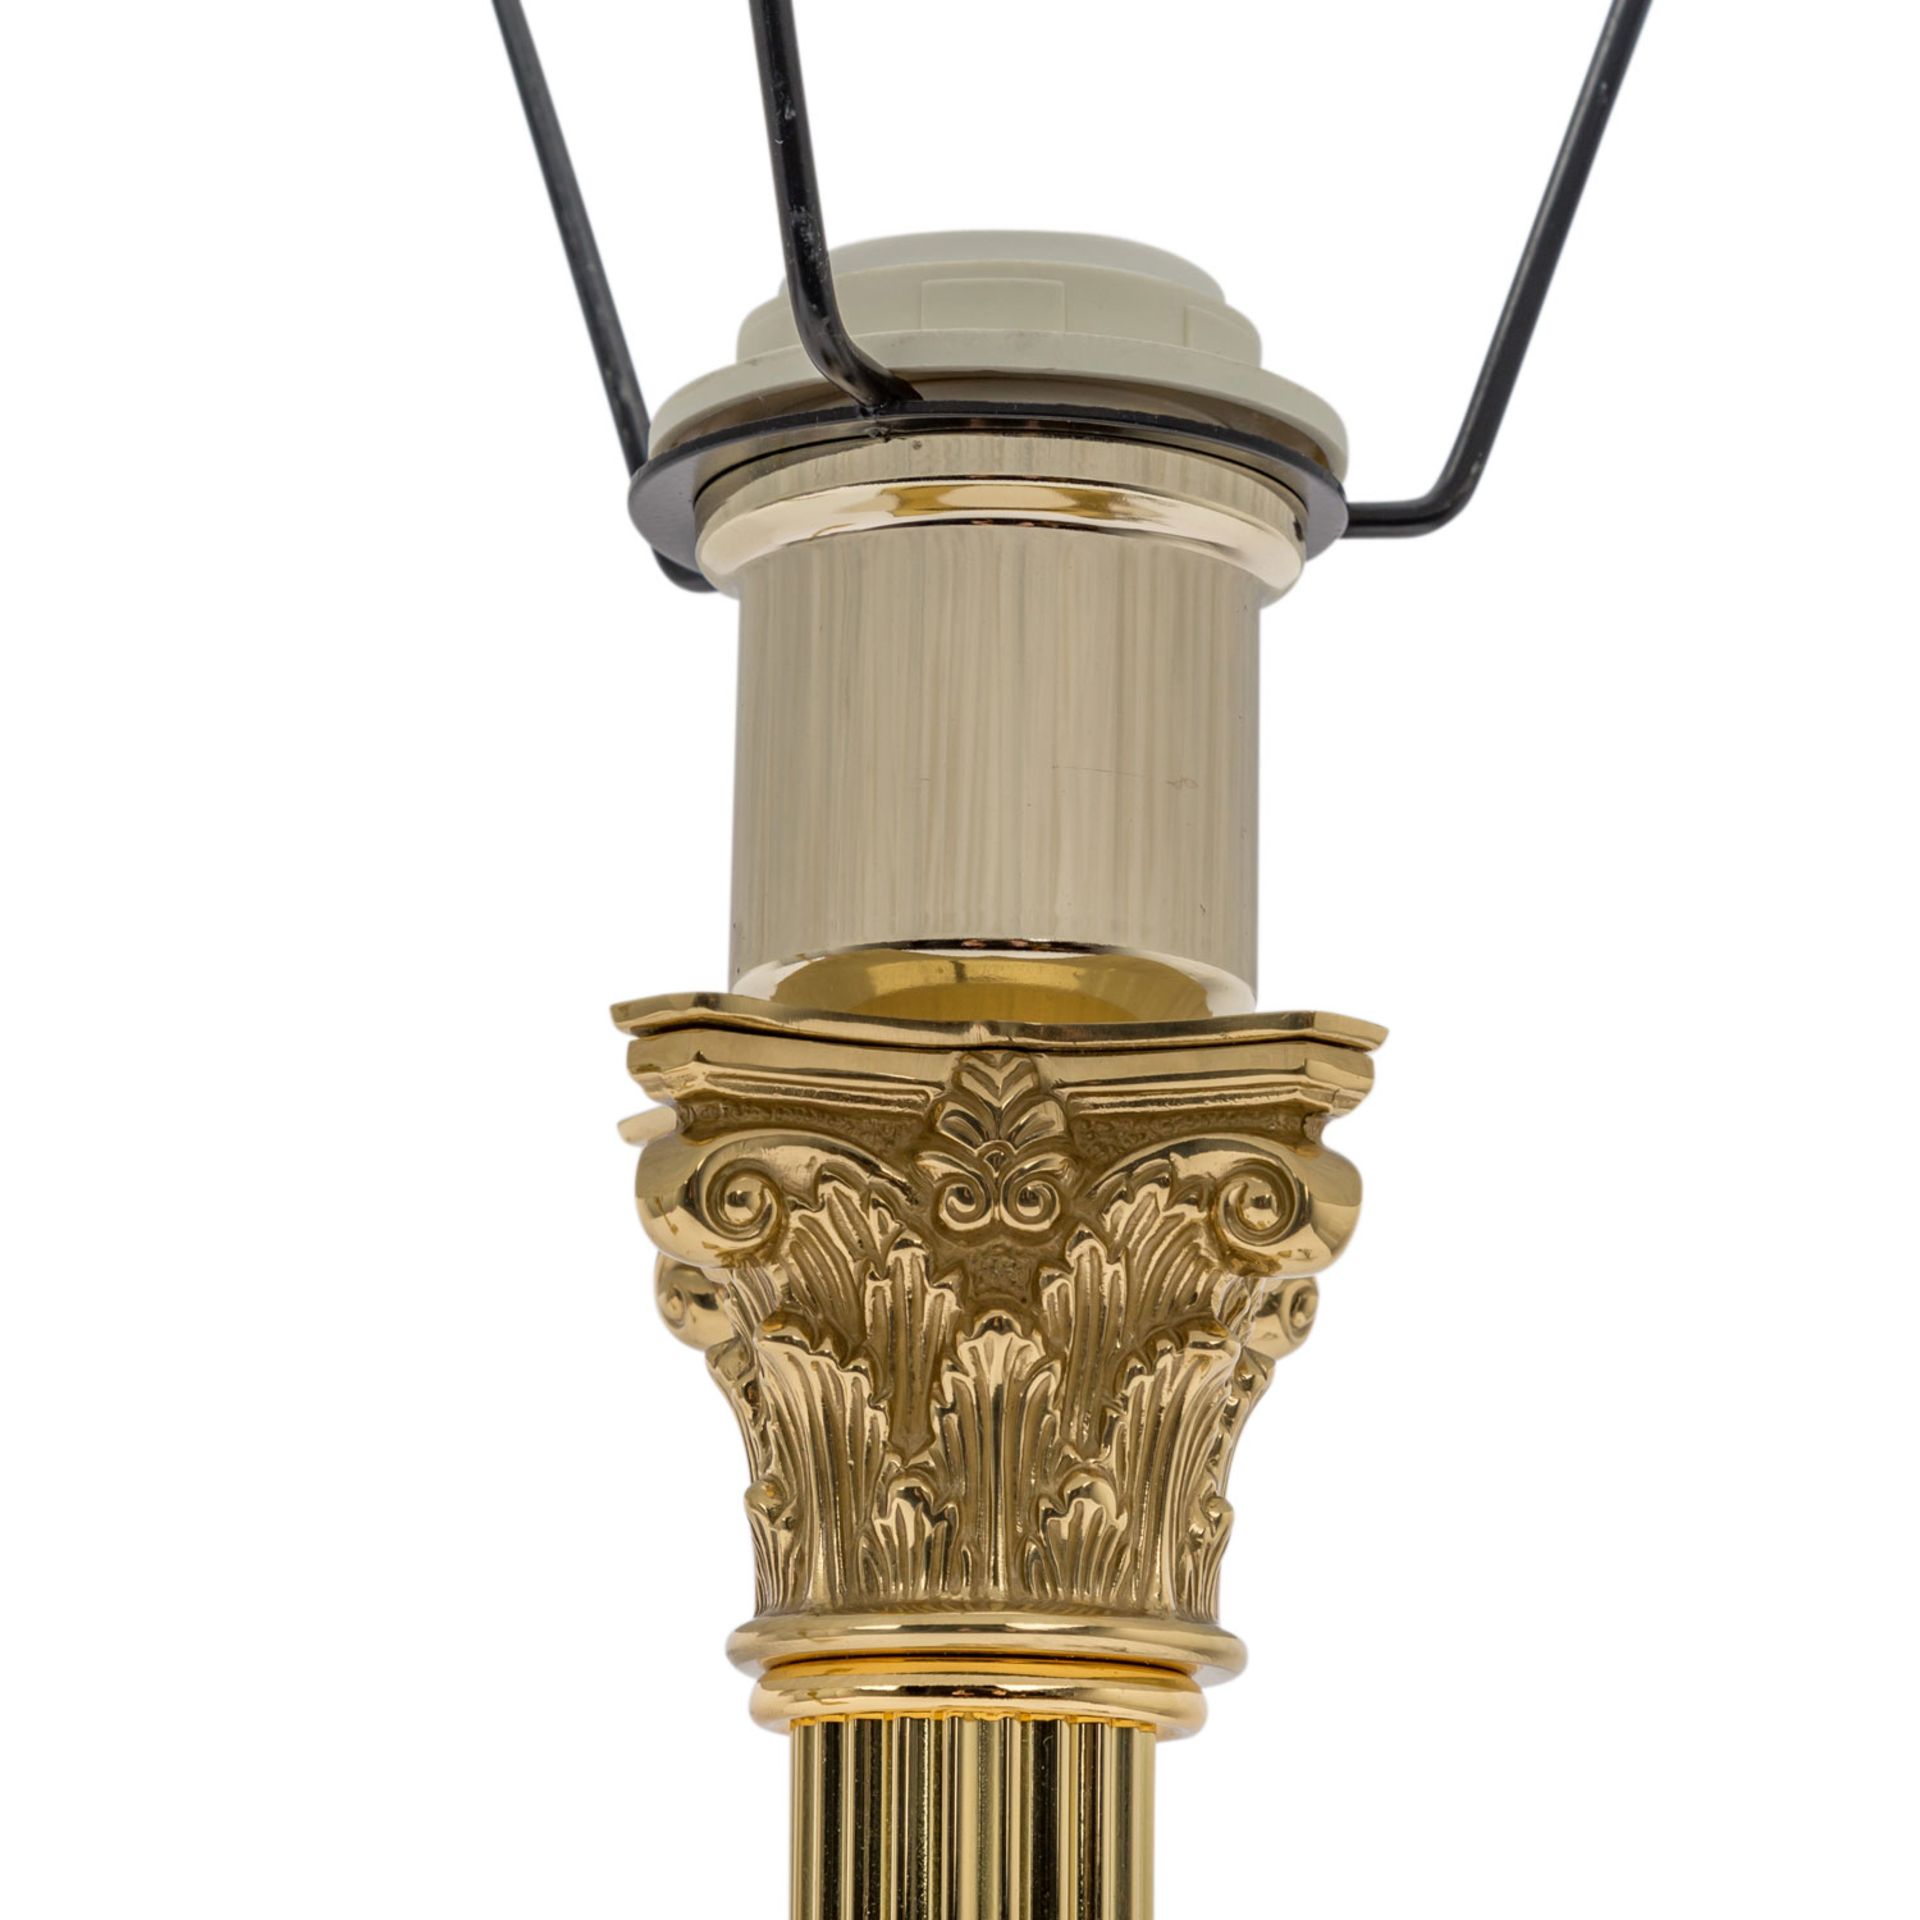 PAAR ELEGANTE TISCHLEUCHTE Messing vergoldet, Stand in Form einer Säule mit korinthis - Image 3 of 3